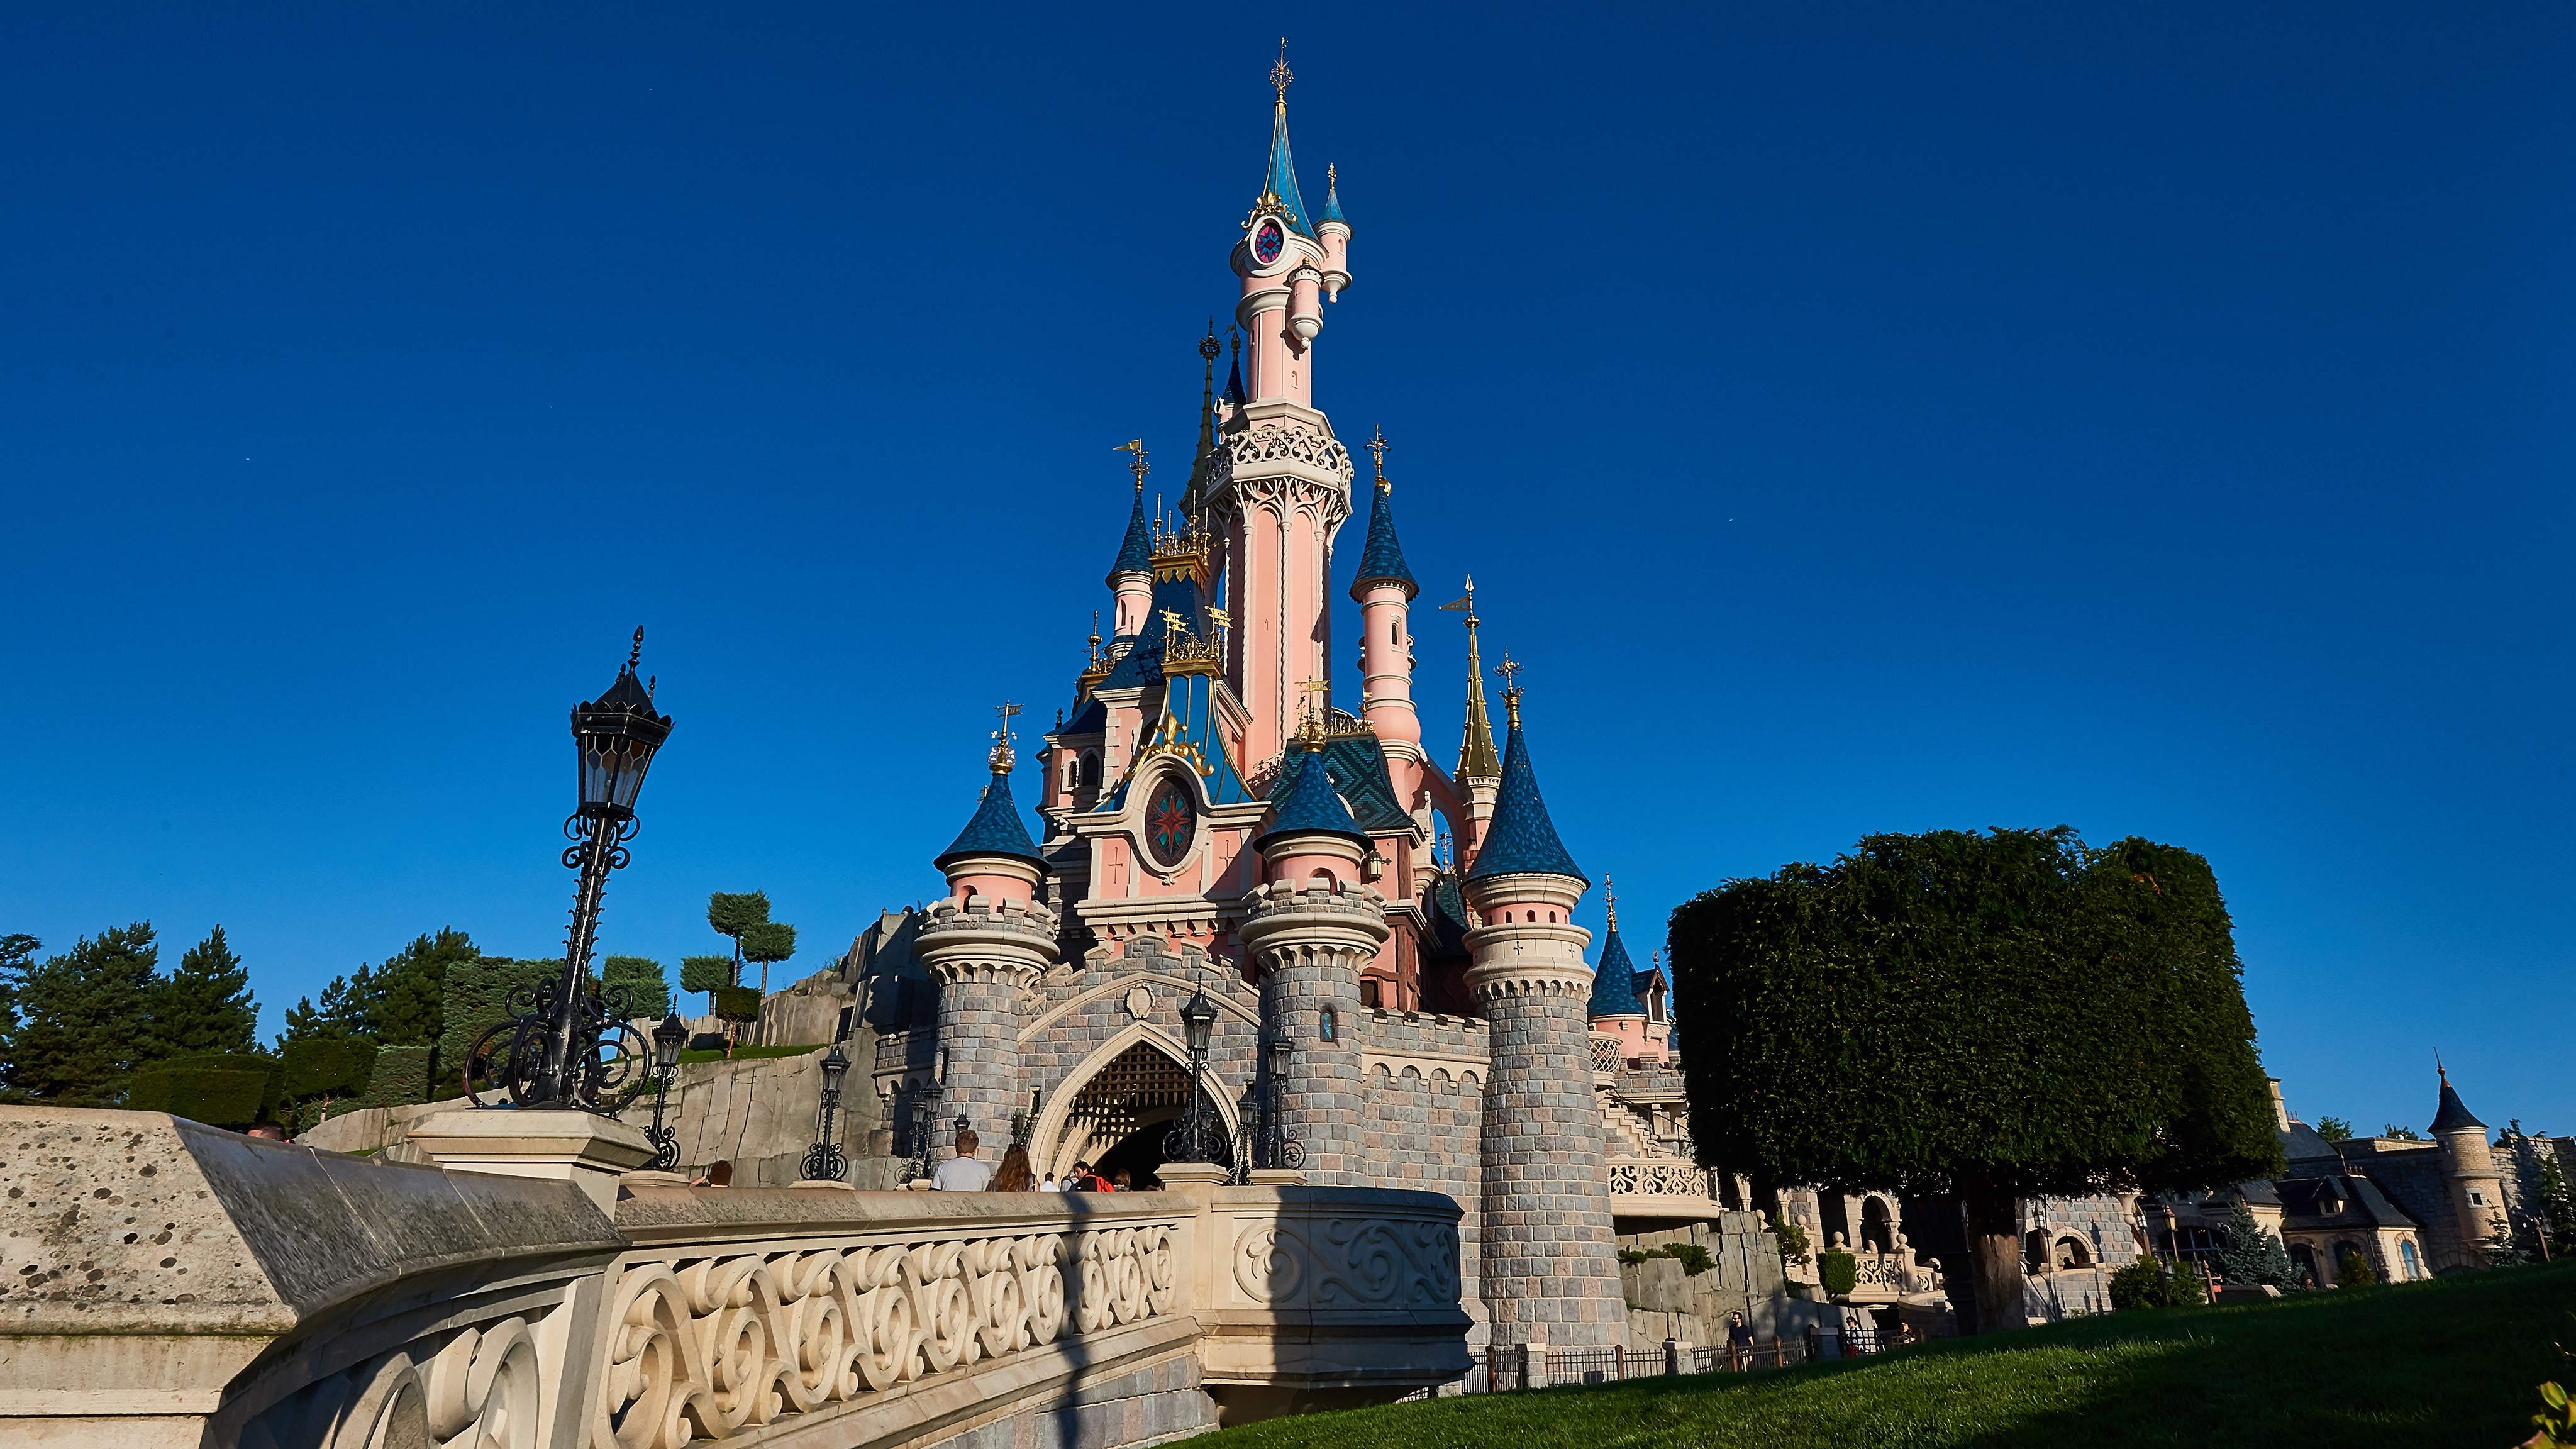 Le Château de la Belle au Bois Dormant, Disneyland Paris